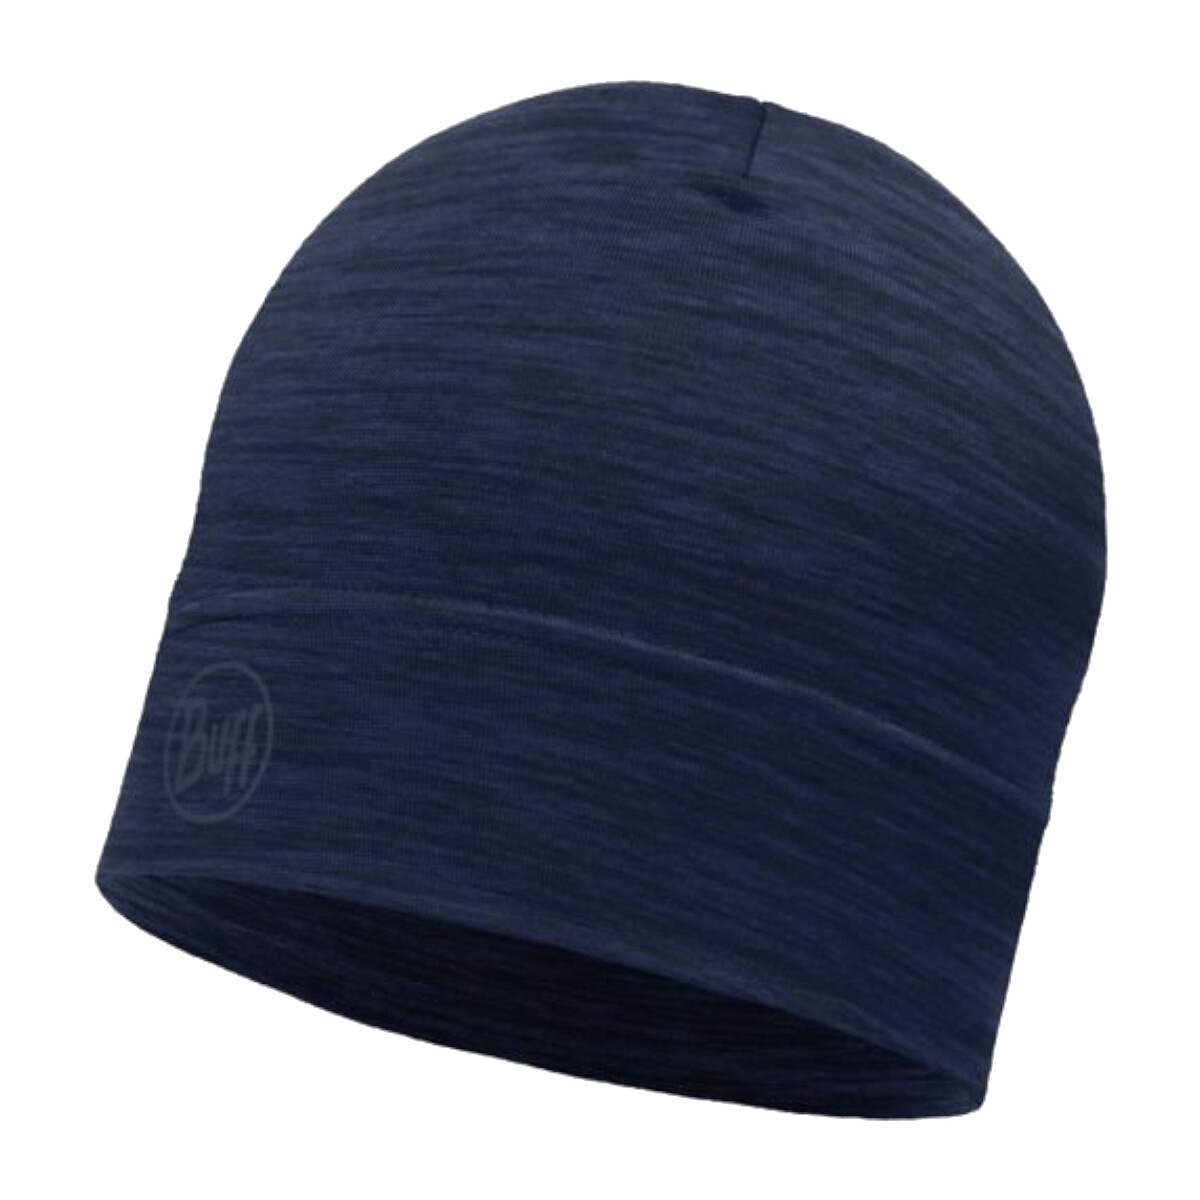 Accesorii textile Căciuli Buff Merino Lightweight Hat Beanie albastru